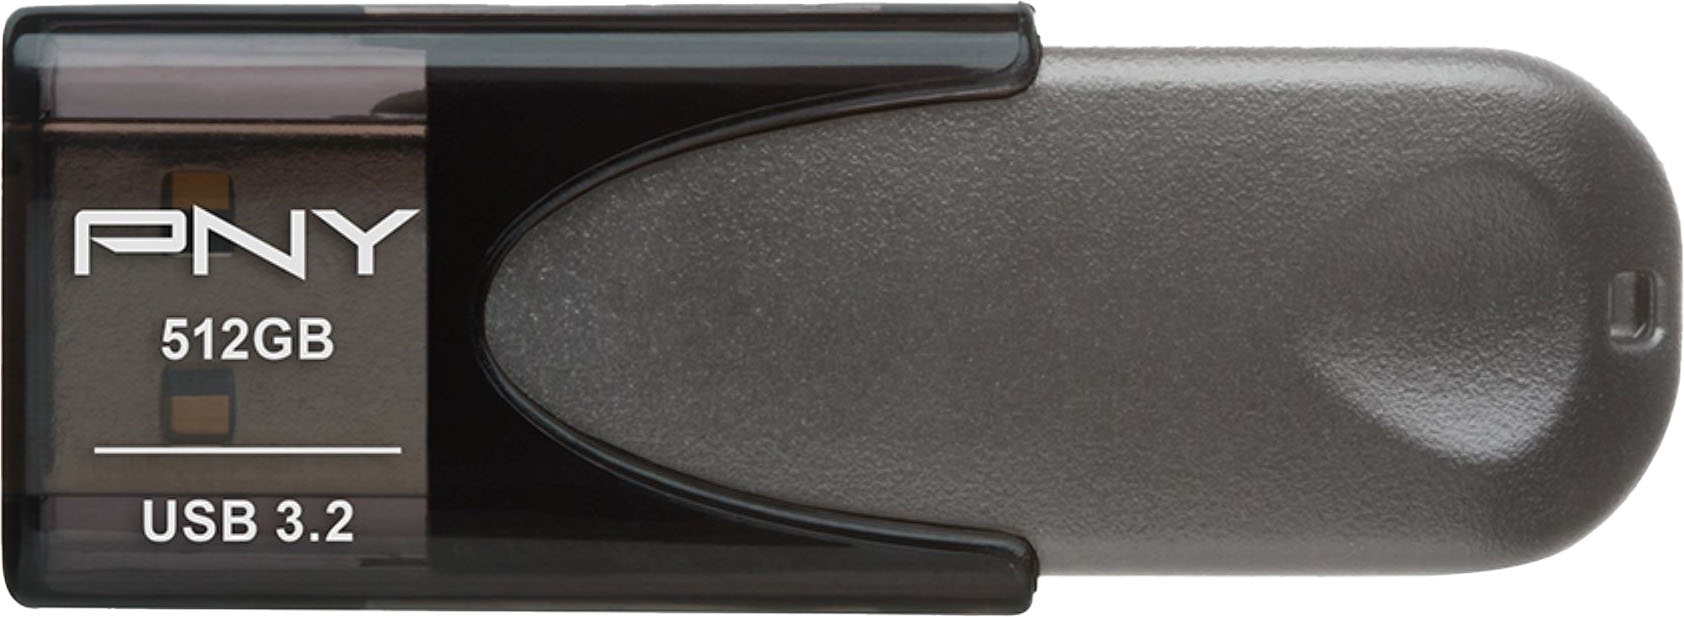 PNY Elite Turbo Attaché 4 512GB USB 3.2 Flash Drive Gray P-FD512TBAT4-GE -  Best Buy